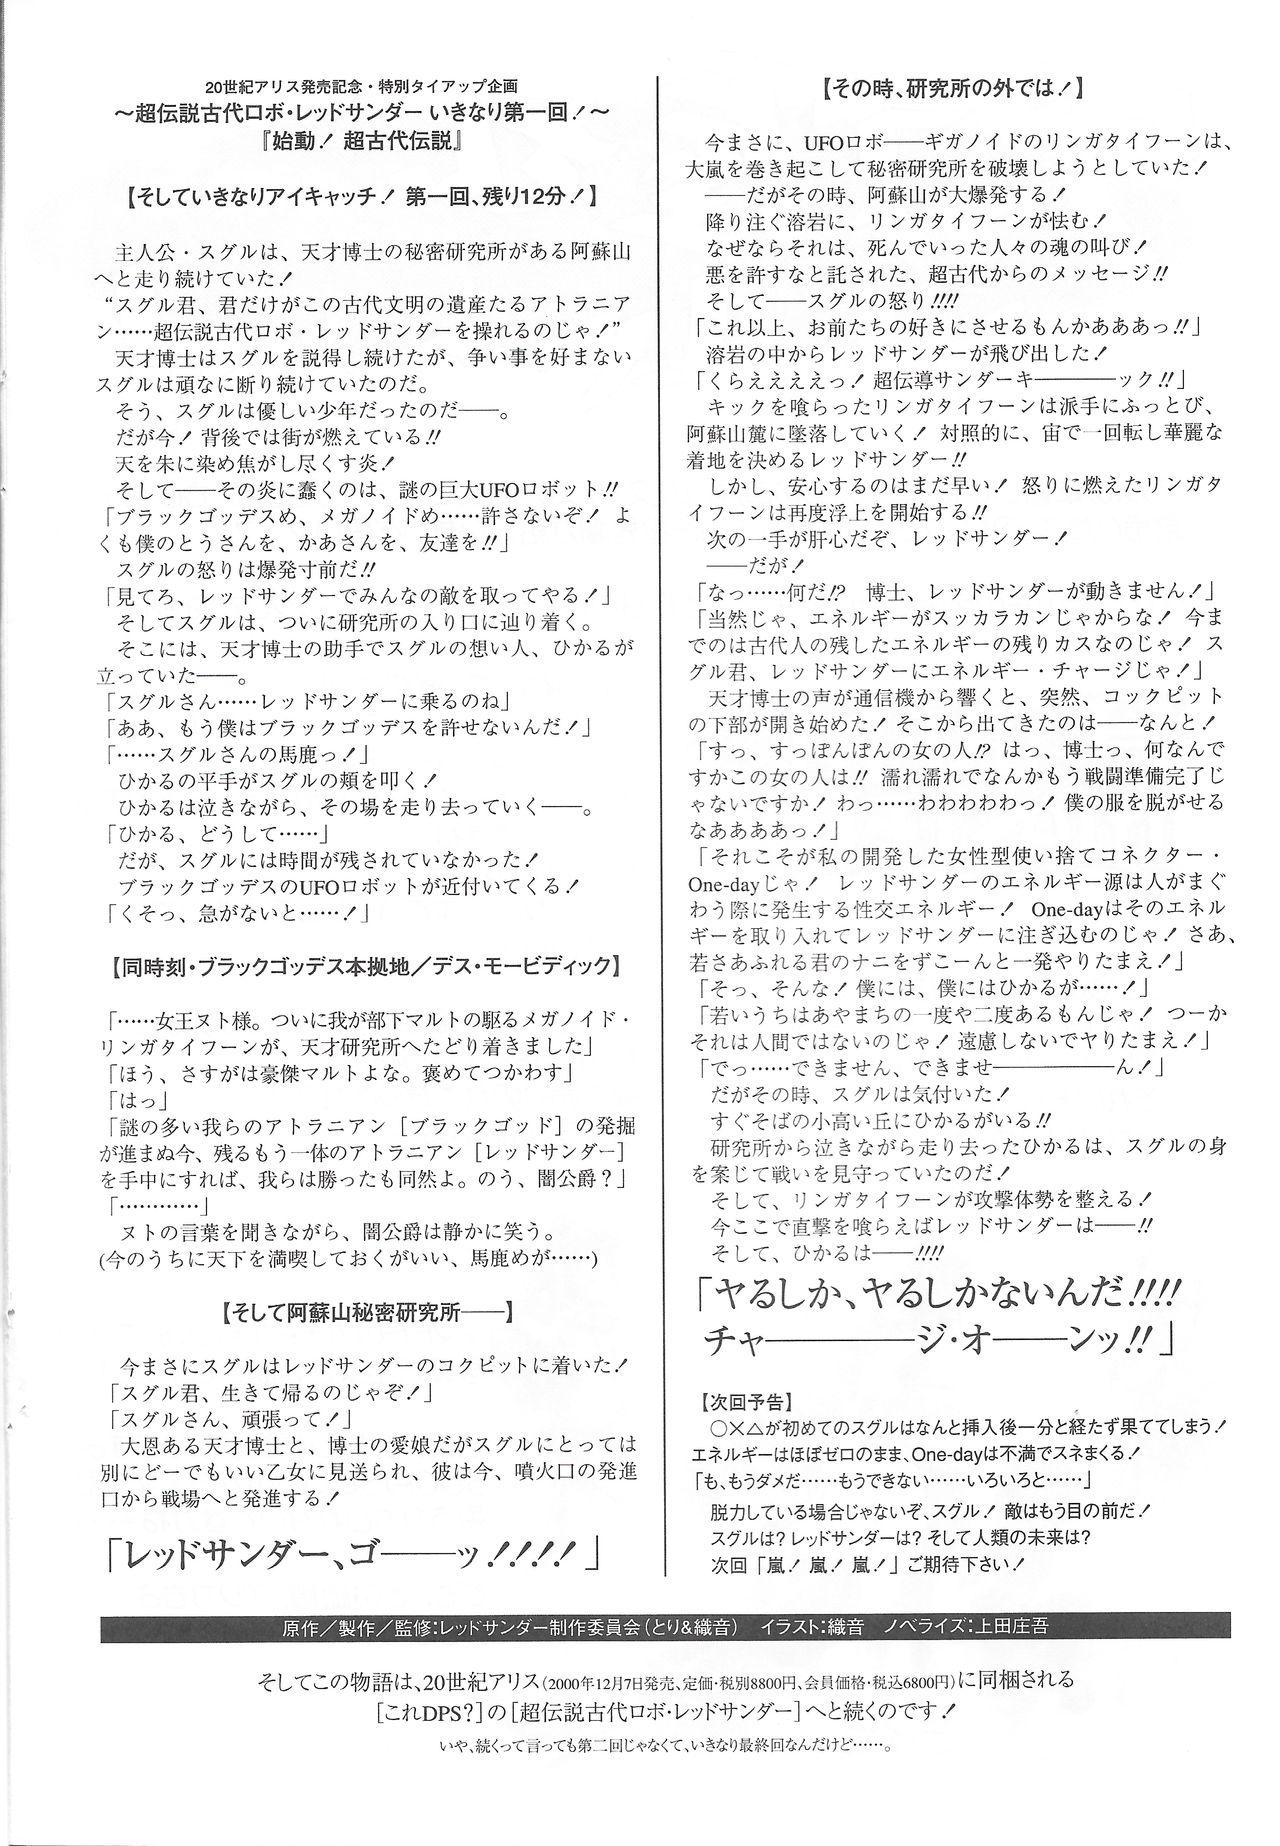 Arisu no Denchi Bakudan Vol. 14 11